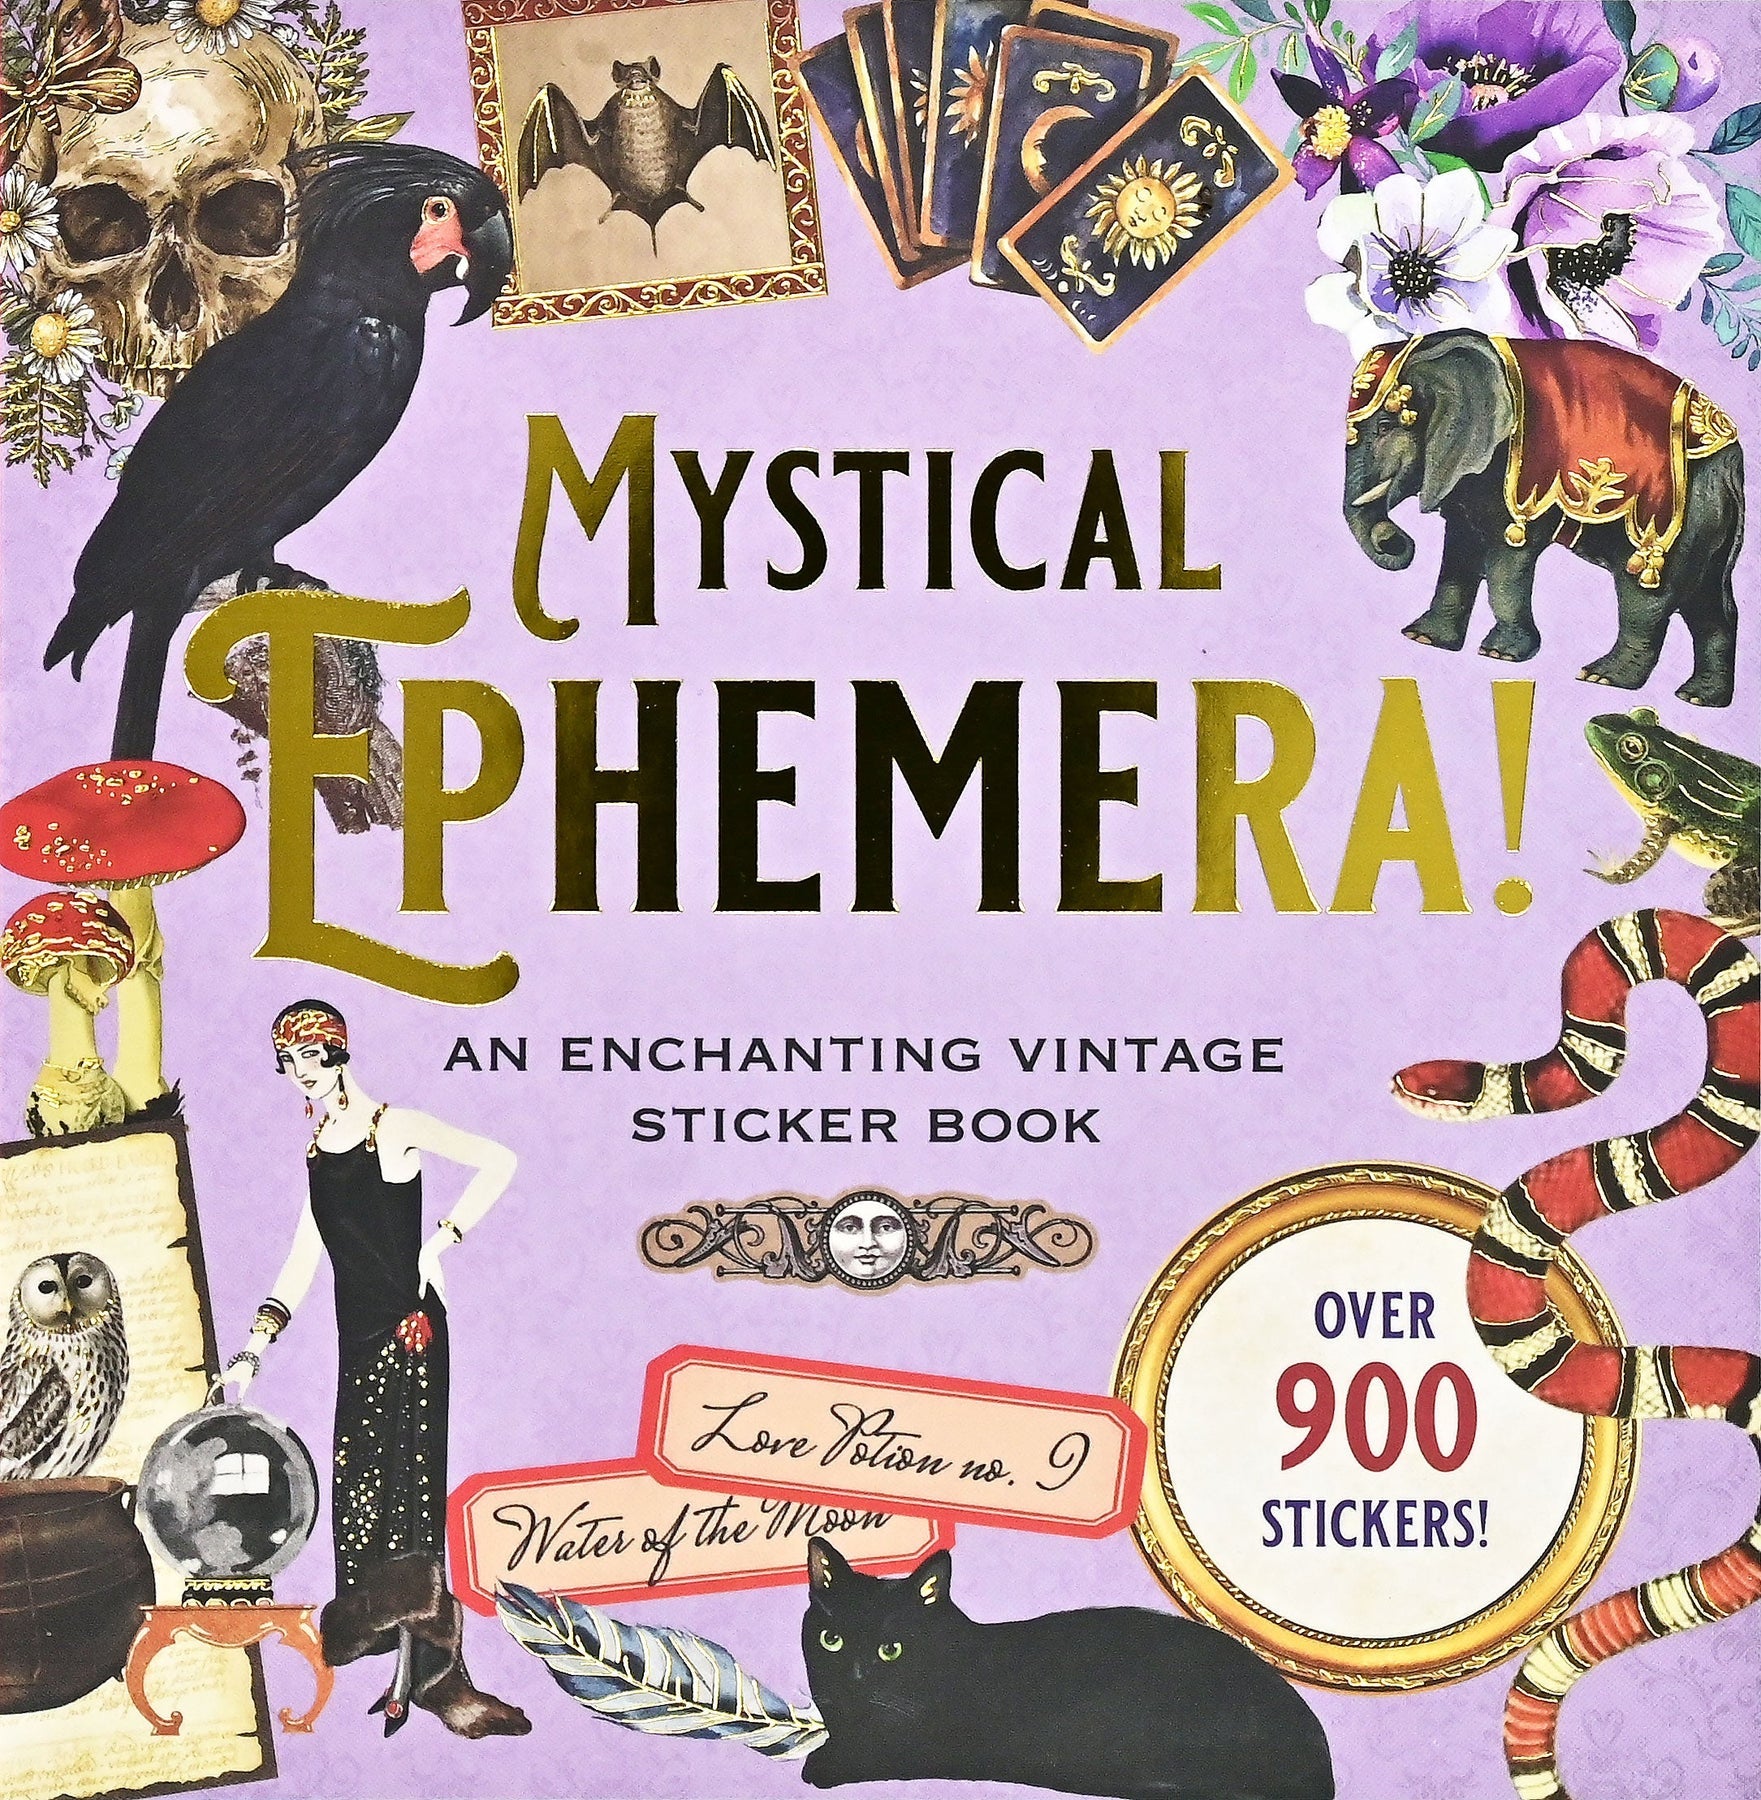 Mystical Ephemera Sticker Book: Over 900 Stickers!